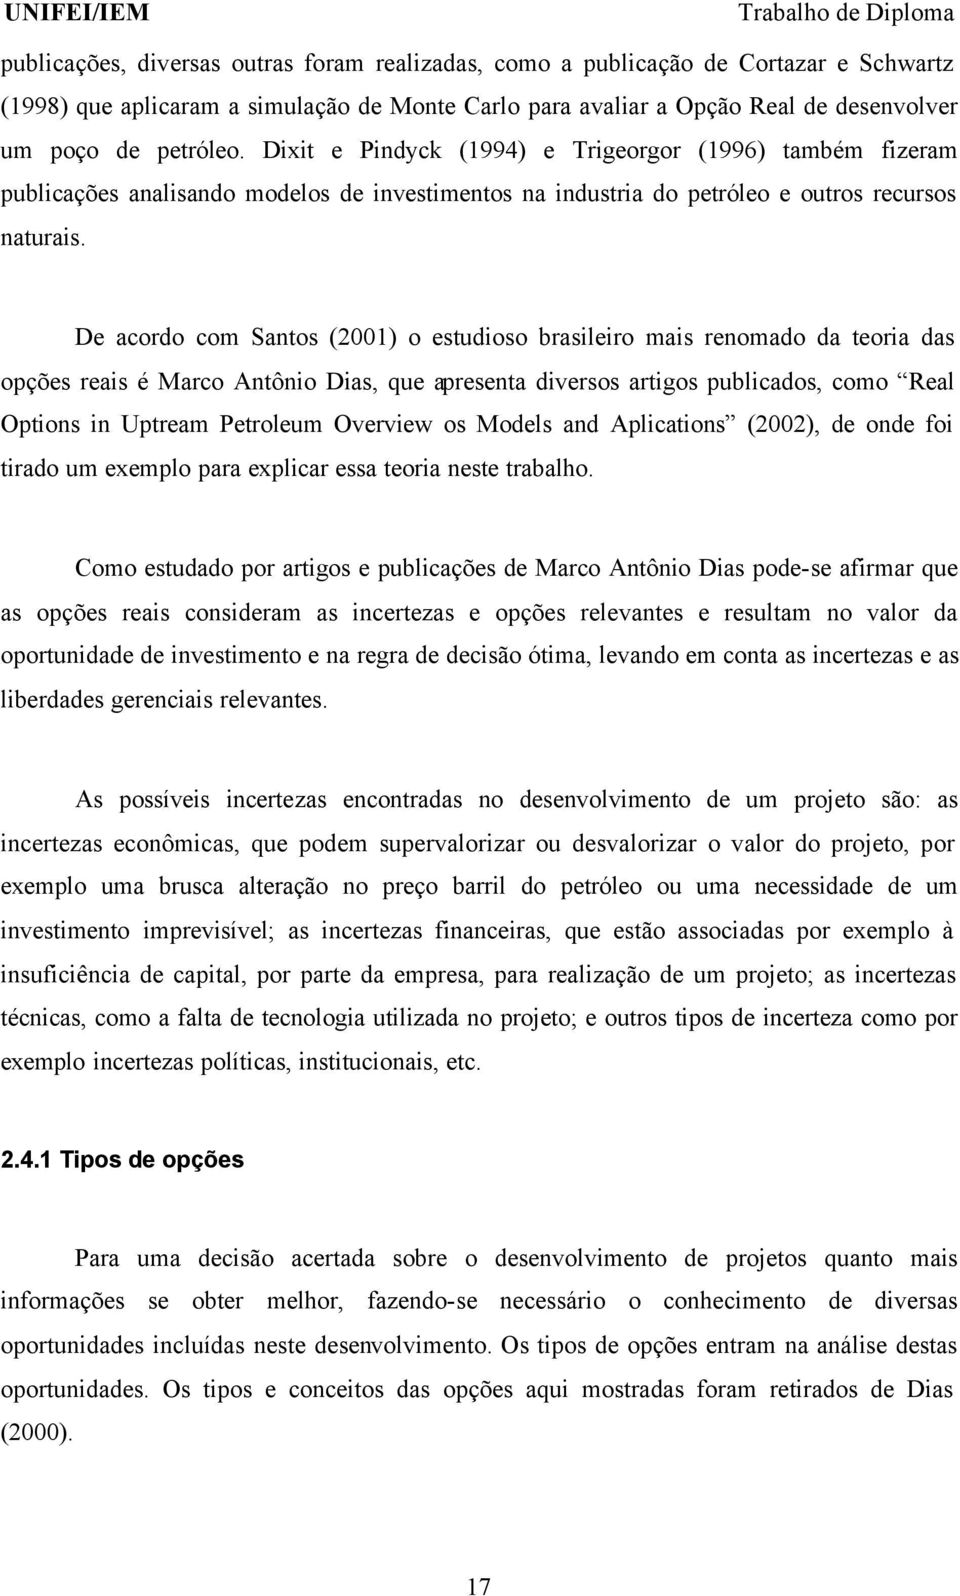 De acordo com Santos (2001) o estudioso brasileiro mais renomado da teoria das opções reais é Marco Antônio Dias, que apresenta diversos artigos publicados, como Real Options in Uptream Petroleum